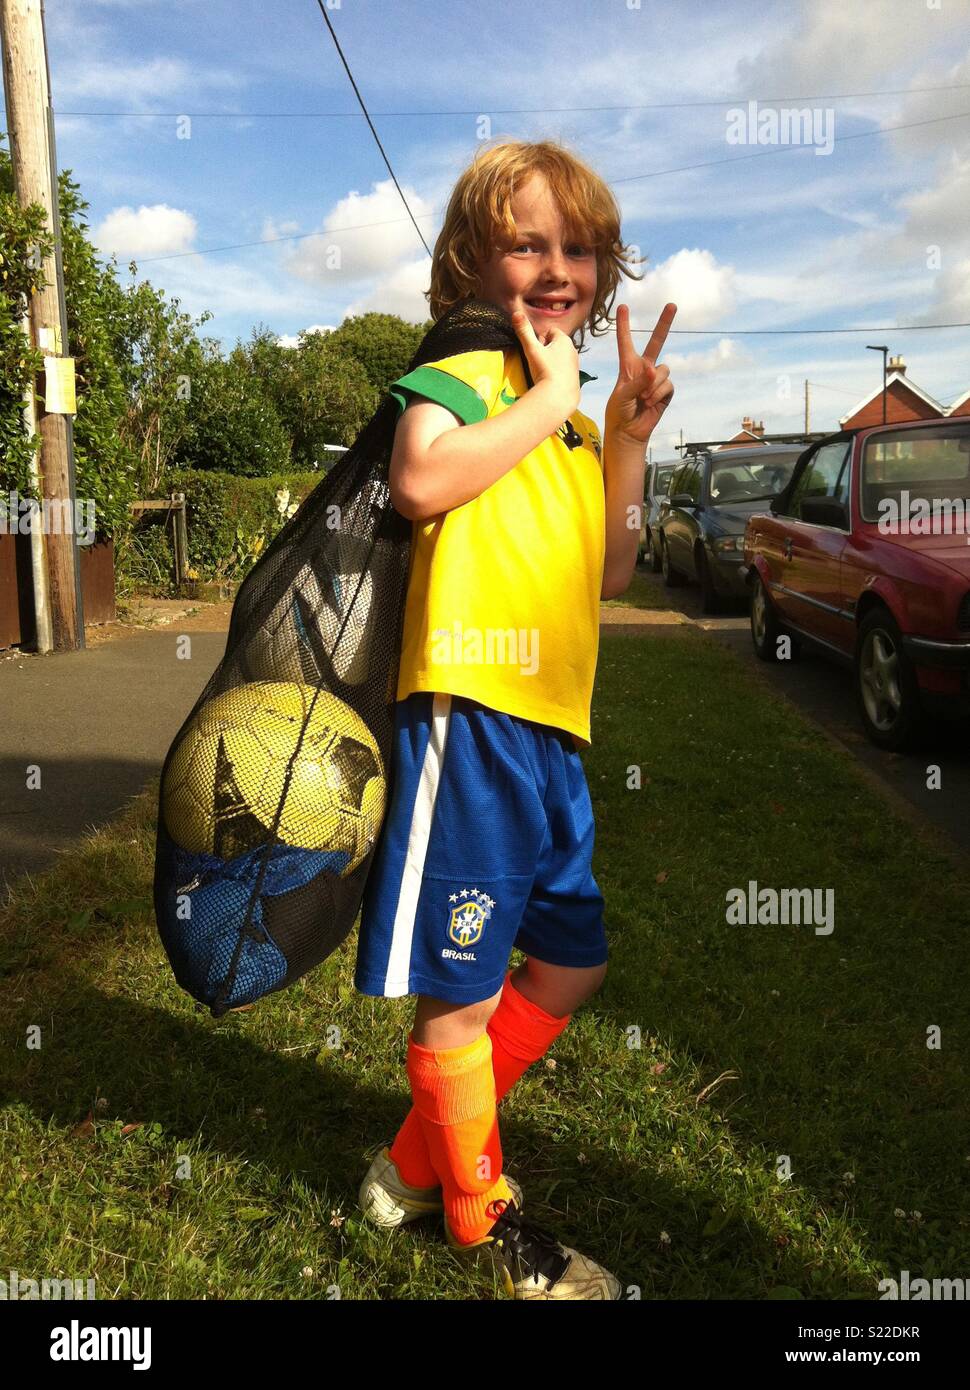 Giovane ragazzo in kit calcio con la sacca di sfere sul modo di formazione di calcio Foto Stock